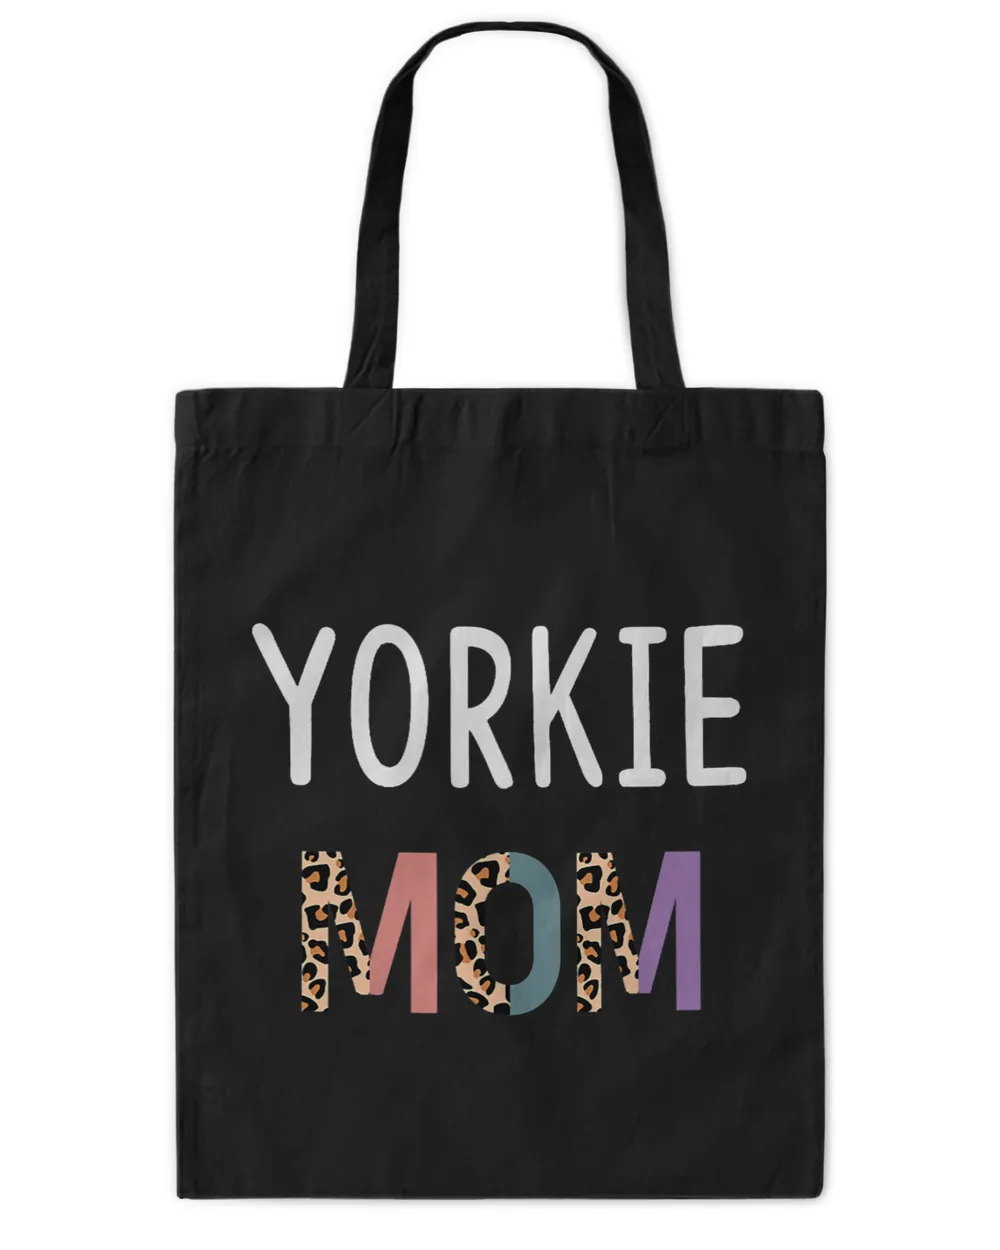 Yorkshire Terrier yorkie Mom Funny Yorkshire Terrier Dog Lover Gift Women Yorkie